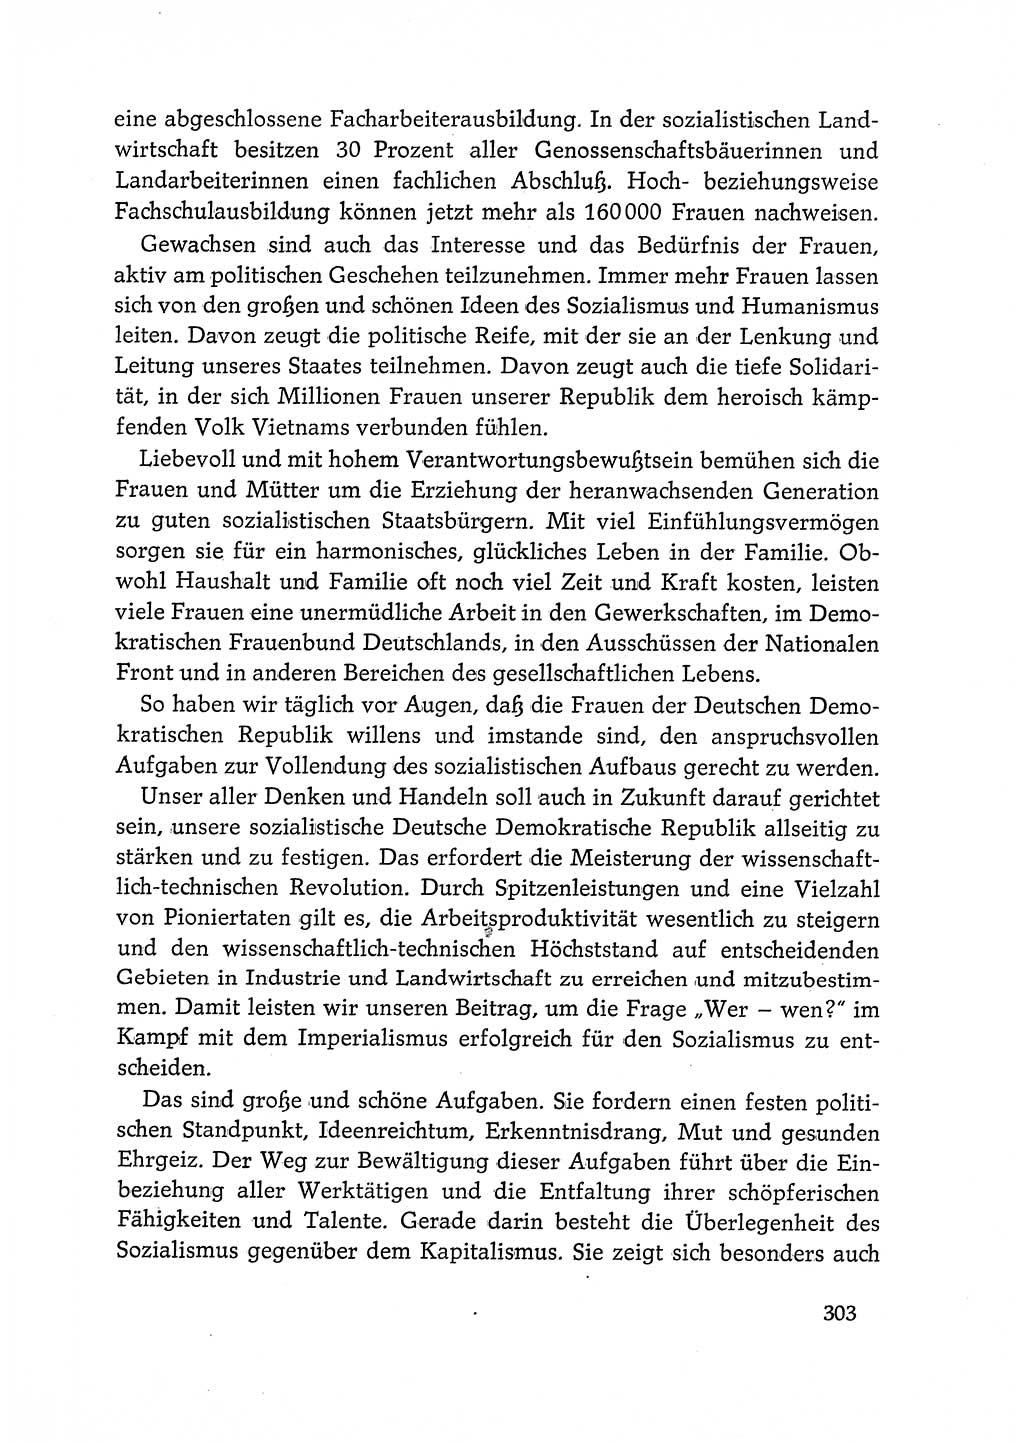 Dokumente der Sozialistischen Einheitspartei Deutschlands (SED) [Deutsche Demokratische Republik (DDR)] 1968-1969, Seite 303 (Dok. SED DDR 1968-1969, S. 303)